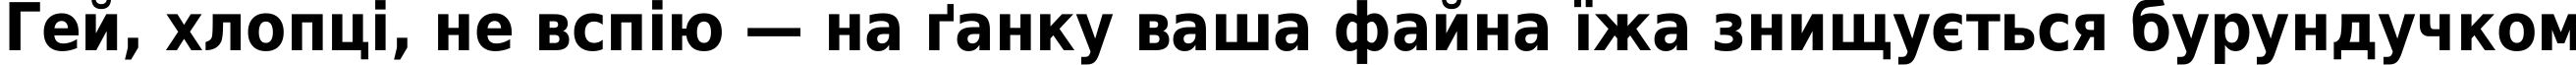 Пример написания шрифтом DejaVu Sans Condensed Bold текста на украинском